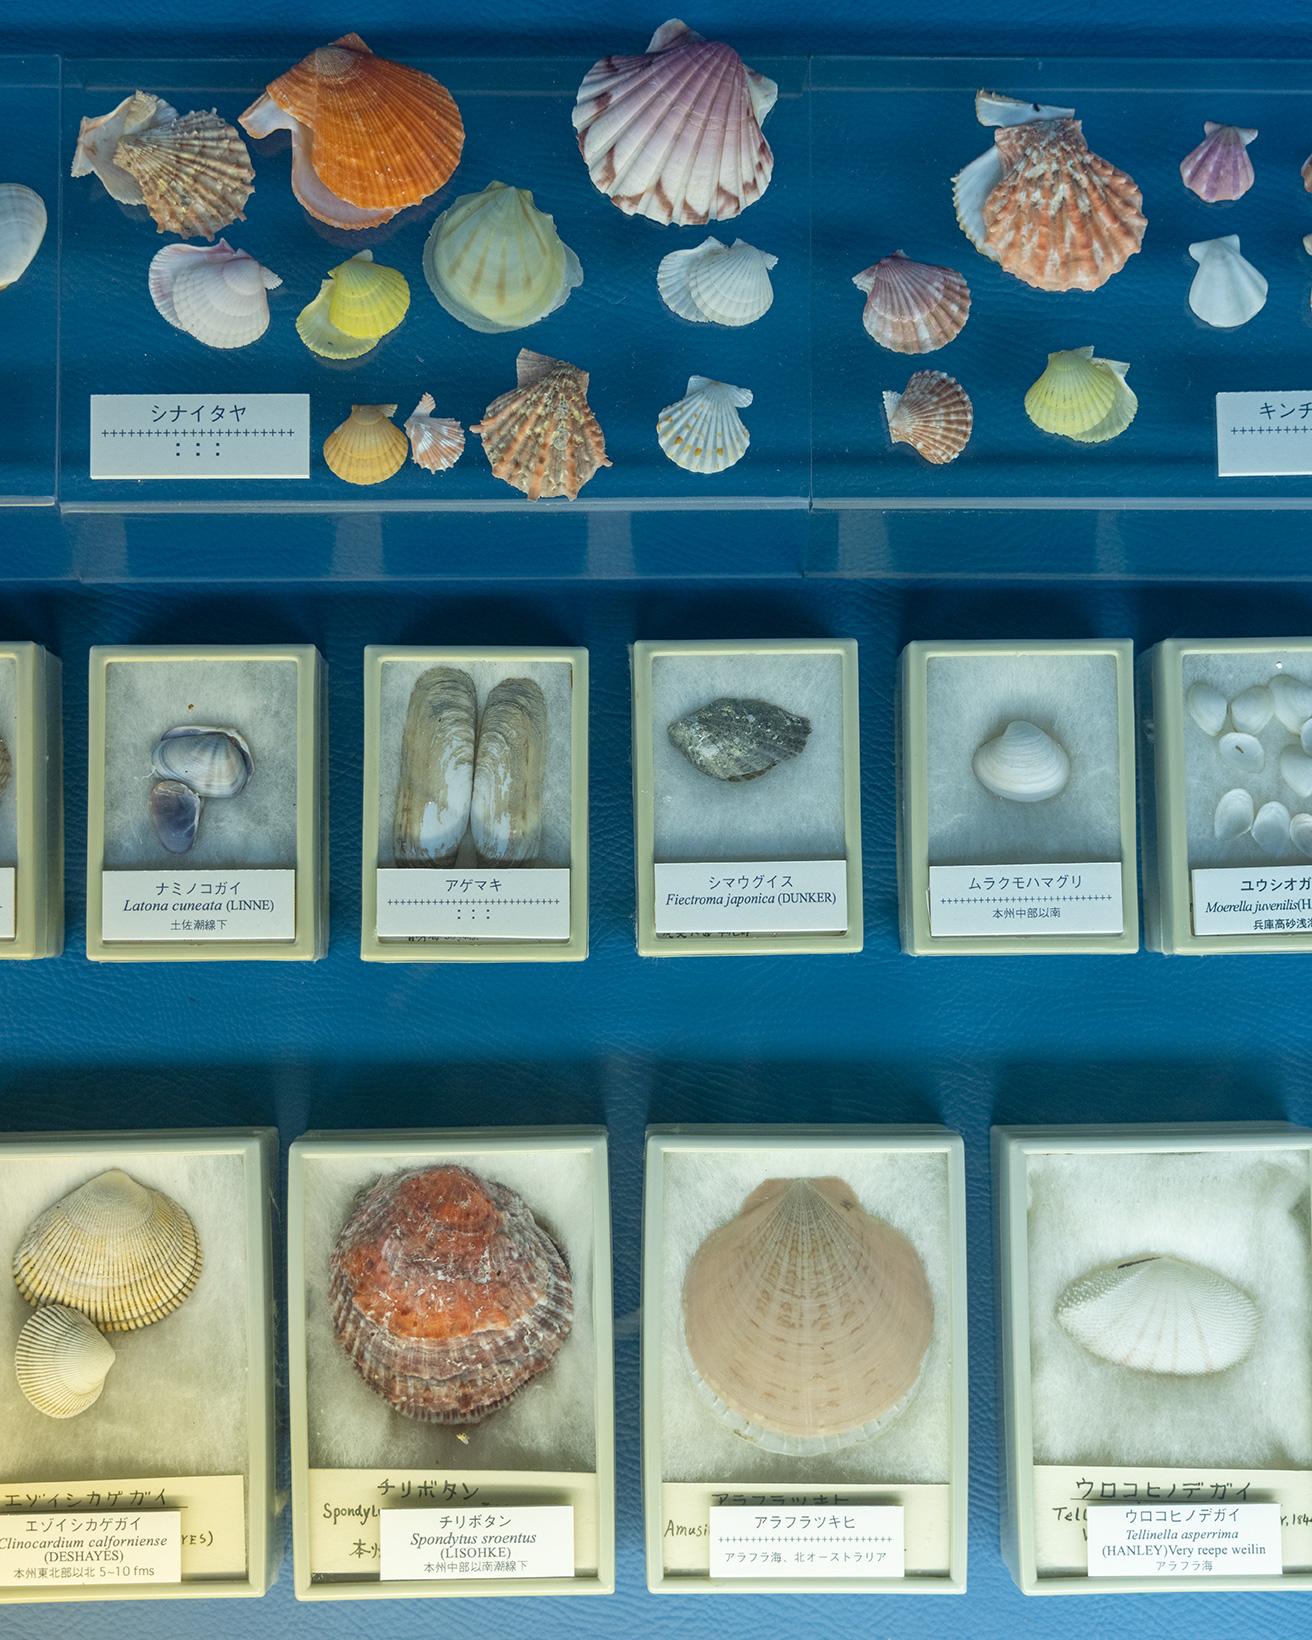 展示する貝は小さいもので1mm以下、大きいもので1m以上とバラエティ豊か。展示する貝のコレクションは全て、土佐清水市に暮らした洋画家の黒原和男から寄贈されたもの。photo_Norio Kidera